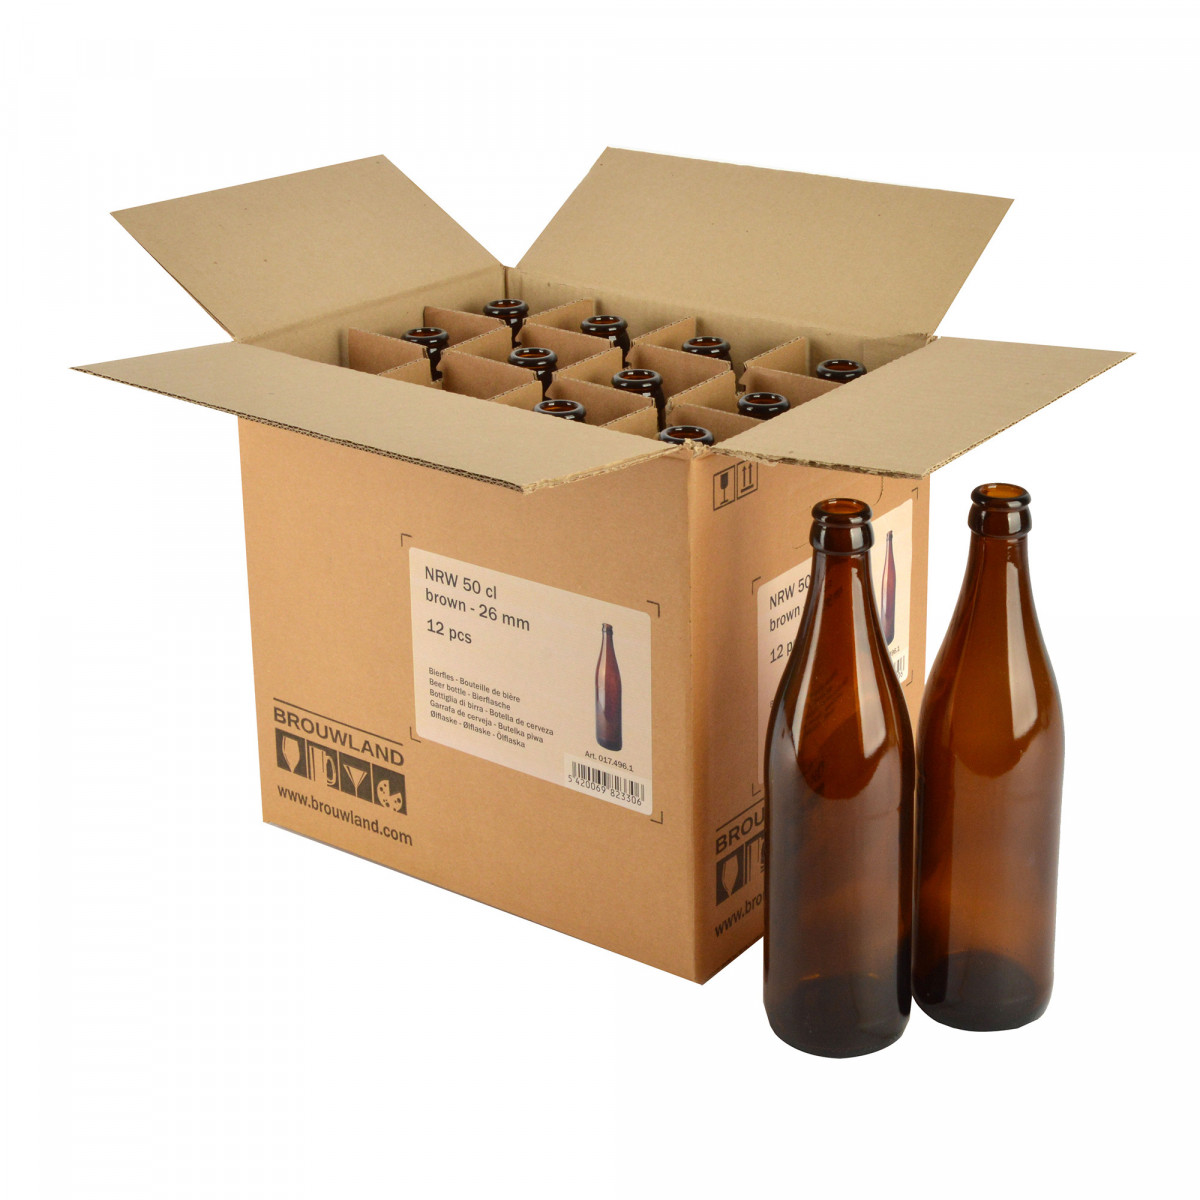 Lochmund 50cl bouteille biere verre vide verallia